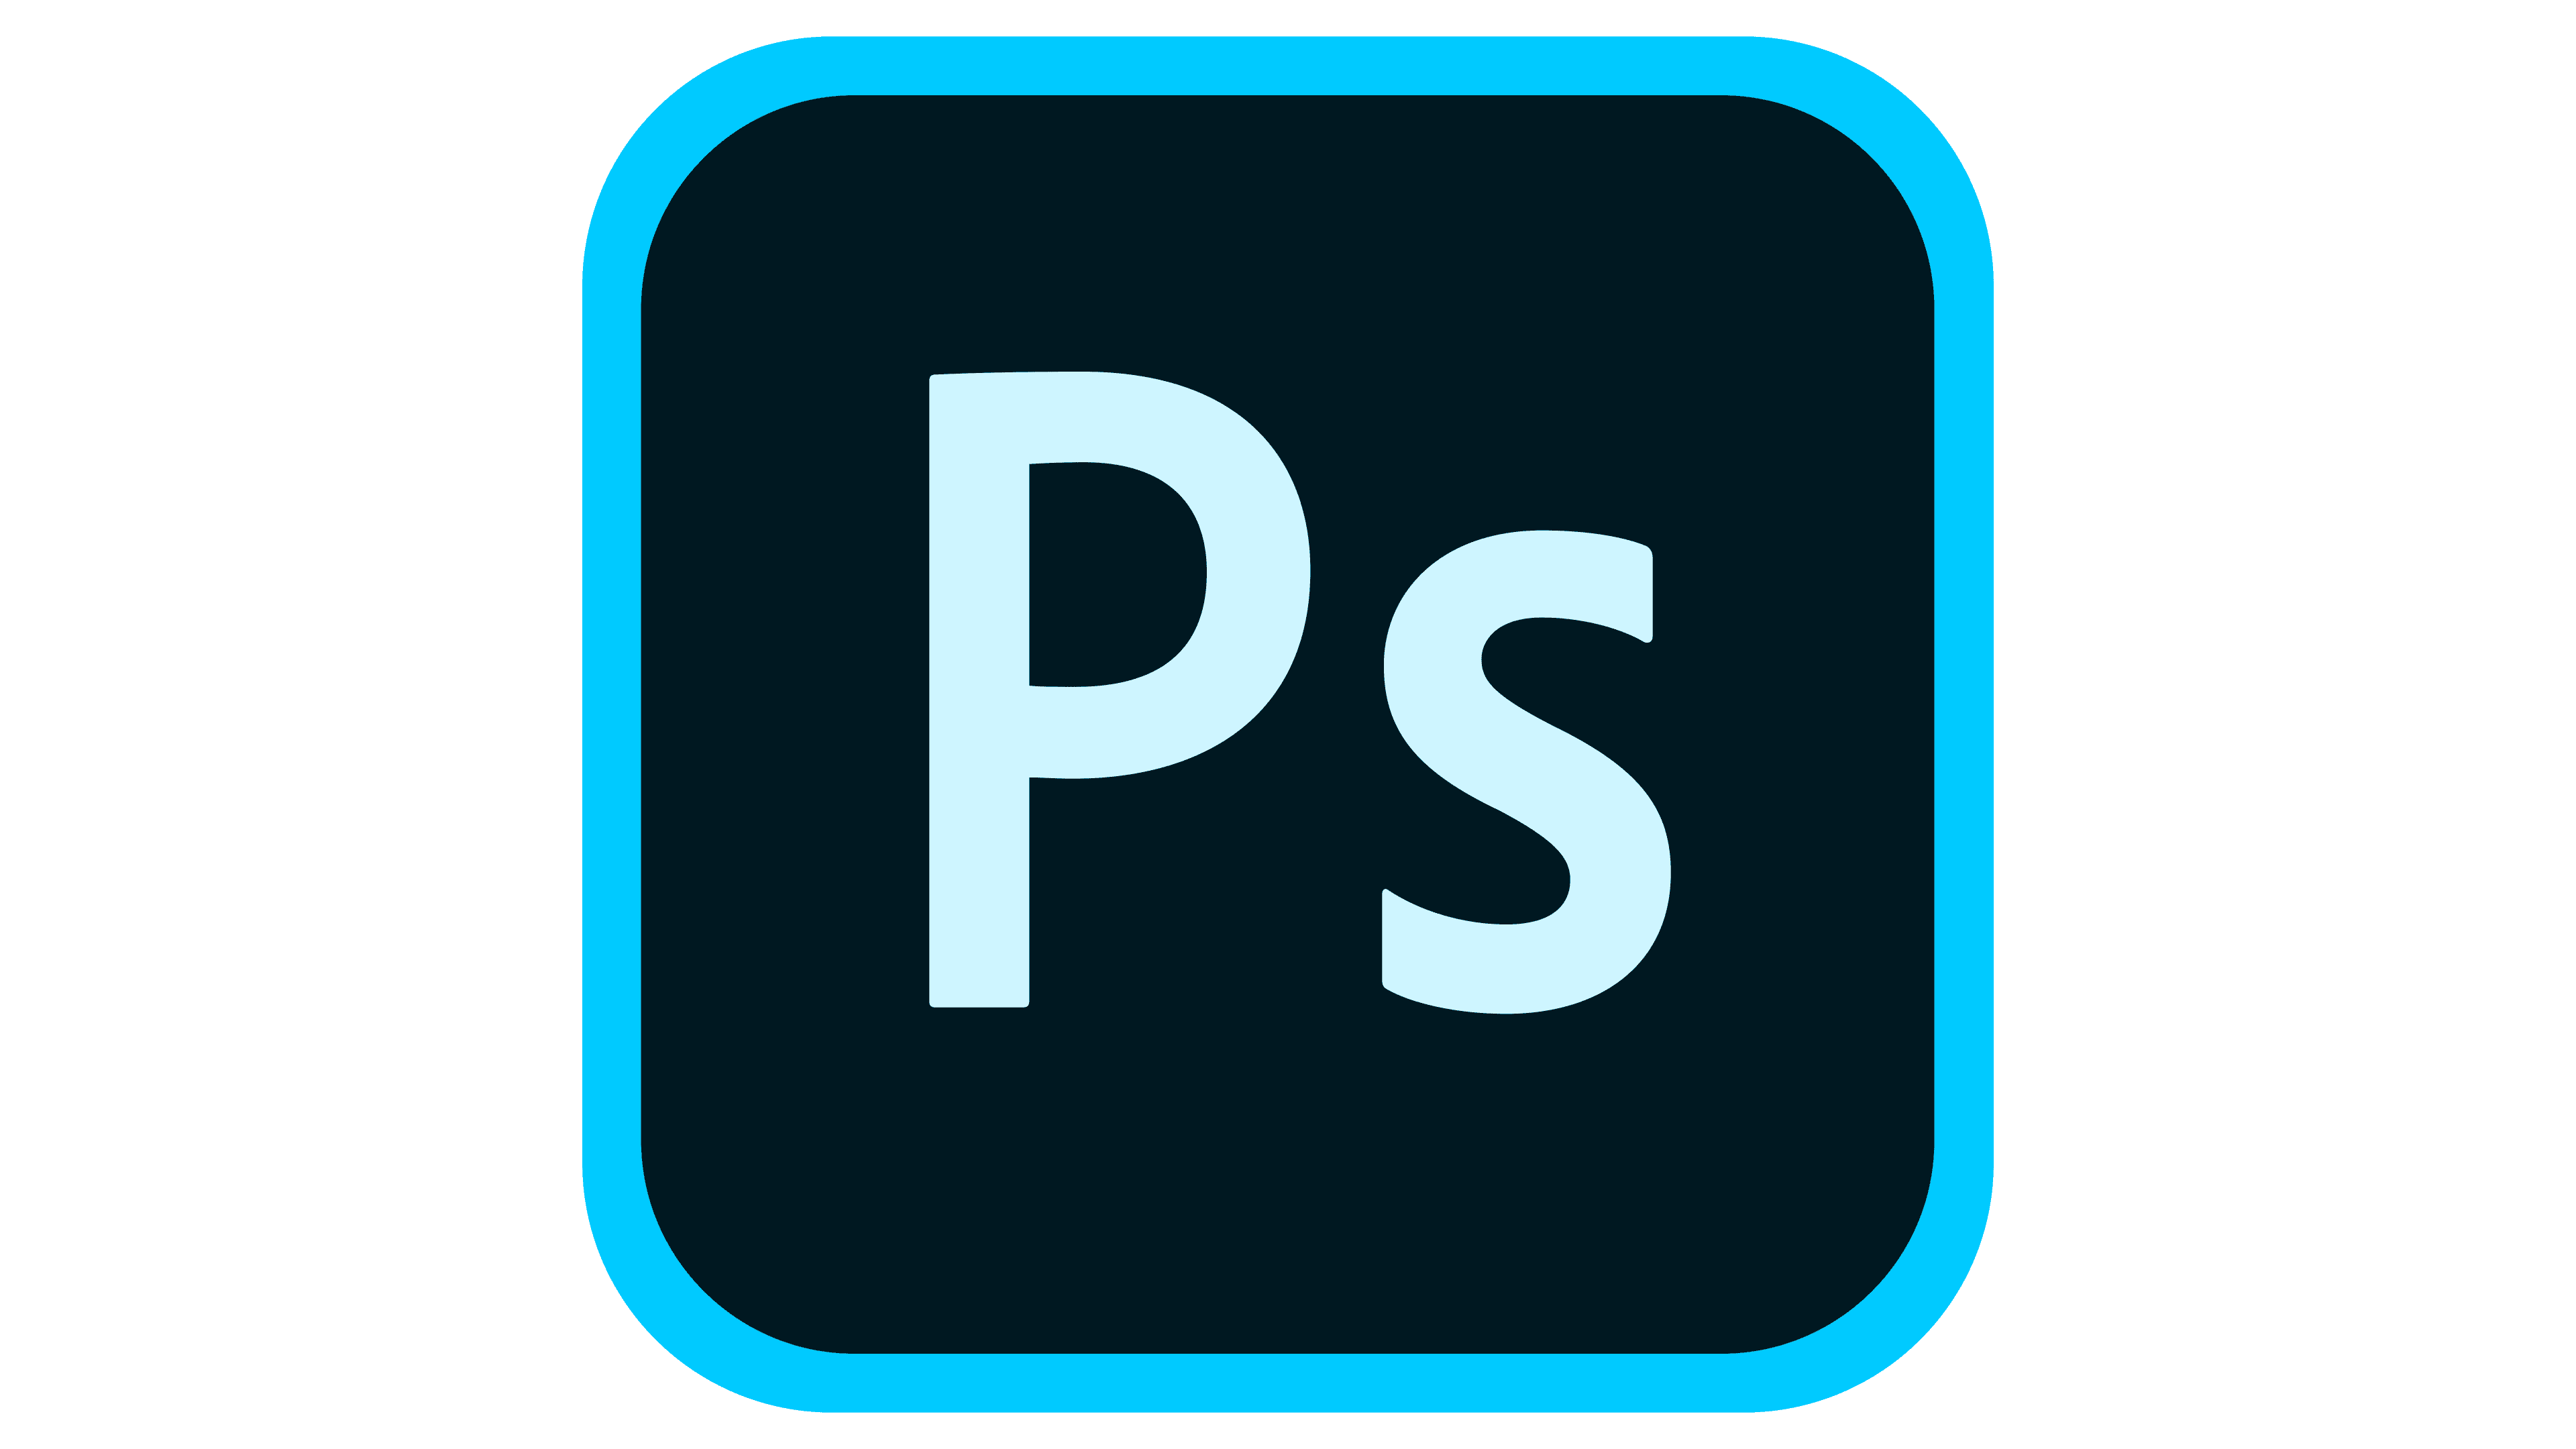 Adobe-Photoshop-Logo-2019-2020